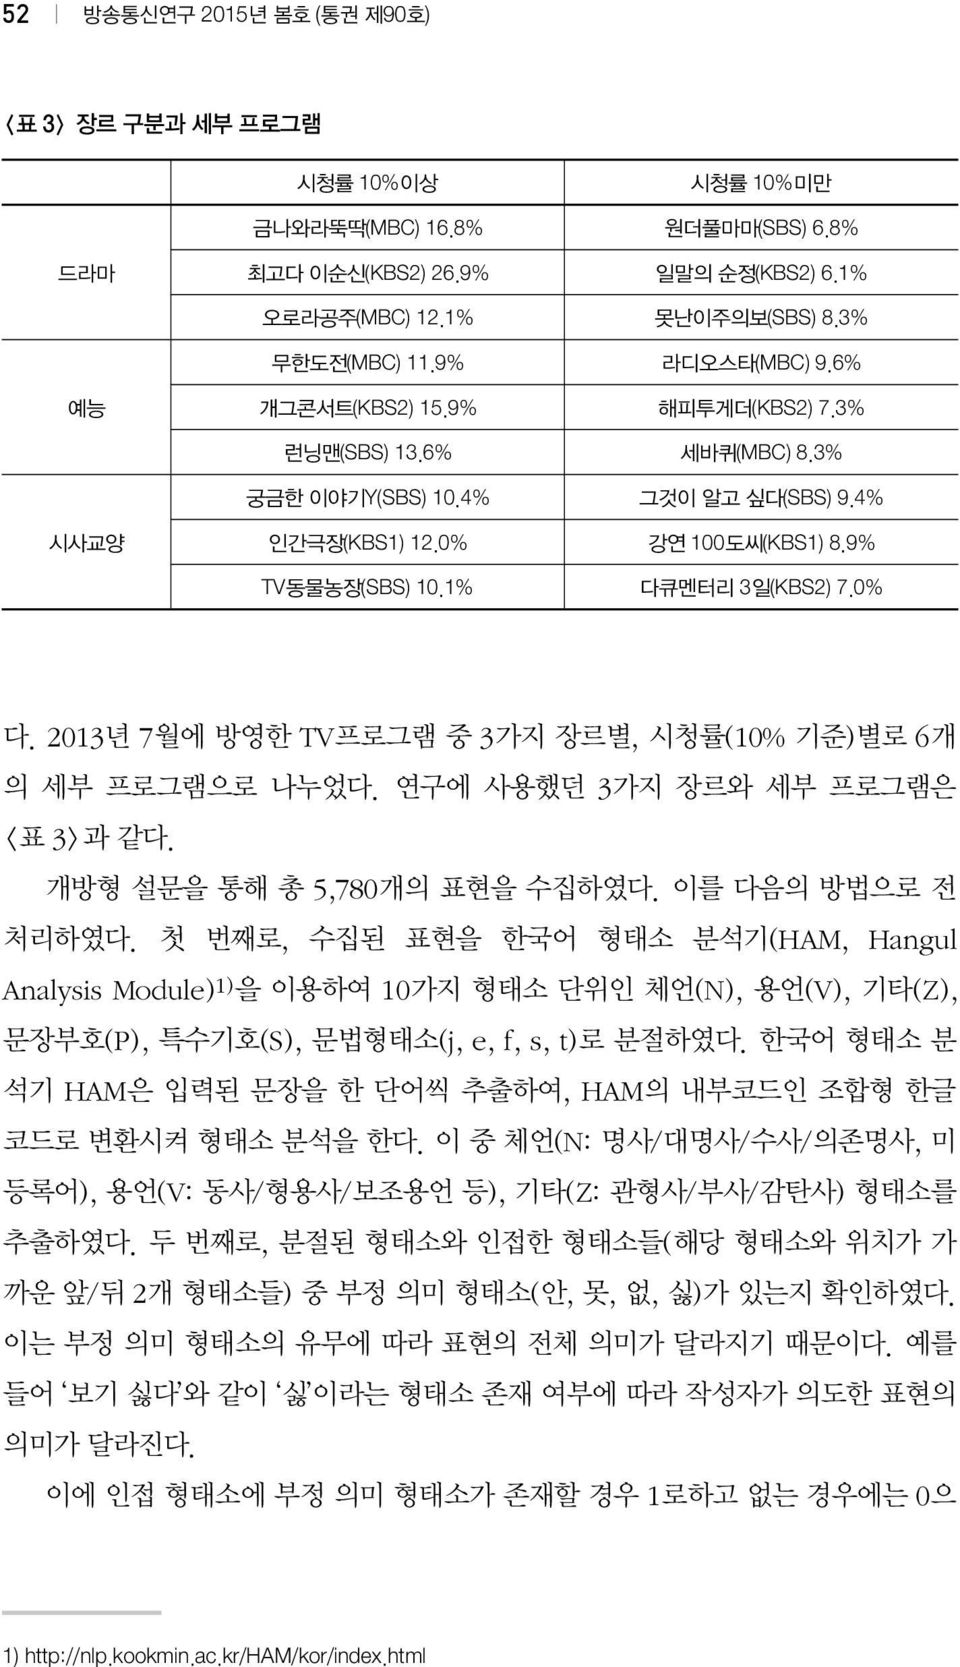 1% 다큐멘터리 3일(KBS2) 7.0% 다. 2013년 7월에 방영한 TV프로그램 중 3가지 장르별, 시청률(10% 기준)별로 6개 의 세부 프로그램으로 나누었다. 연구에 사용했던 3가지 장르와 세부 프로그램은 <표 3>과 같다. 개방형 설문을 통해 총 5,780개의 표현을 수집하였다. 이를 다음의 방법으로 전 처리하였다.